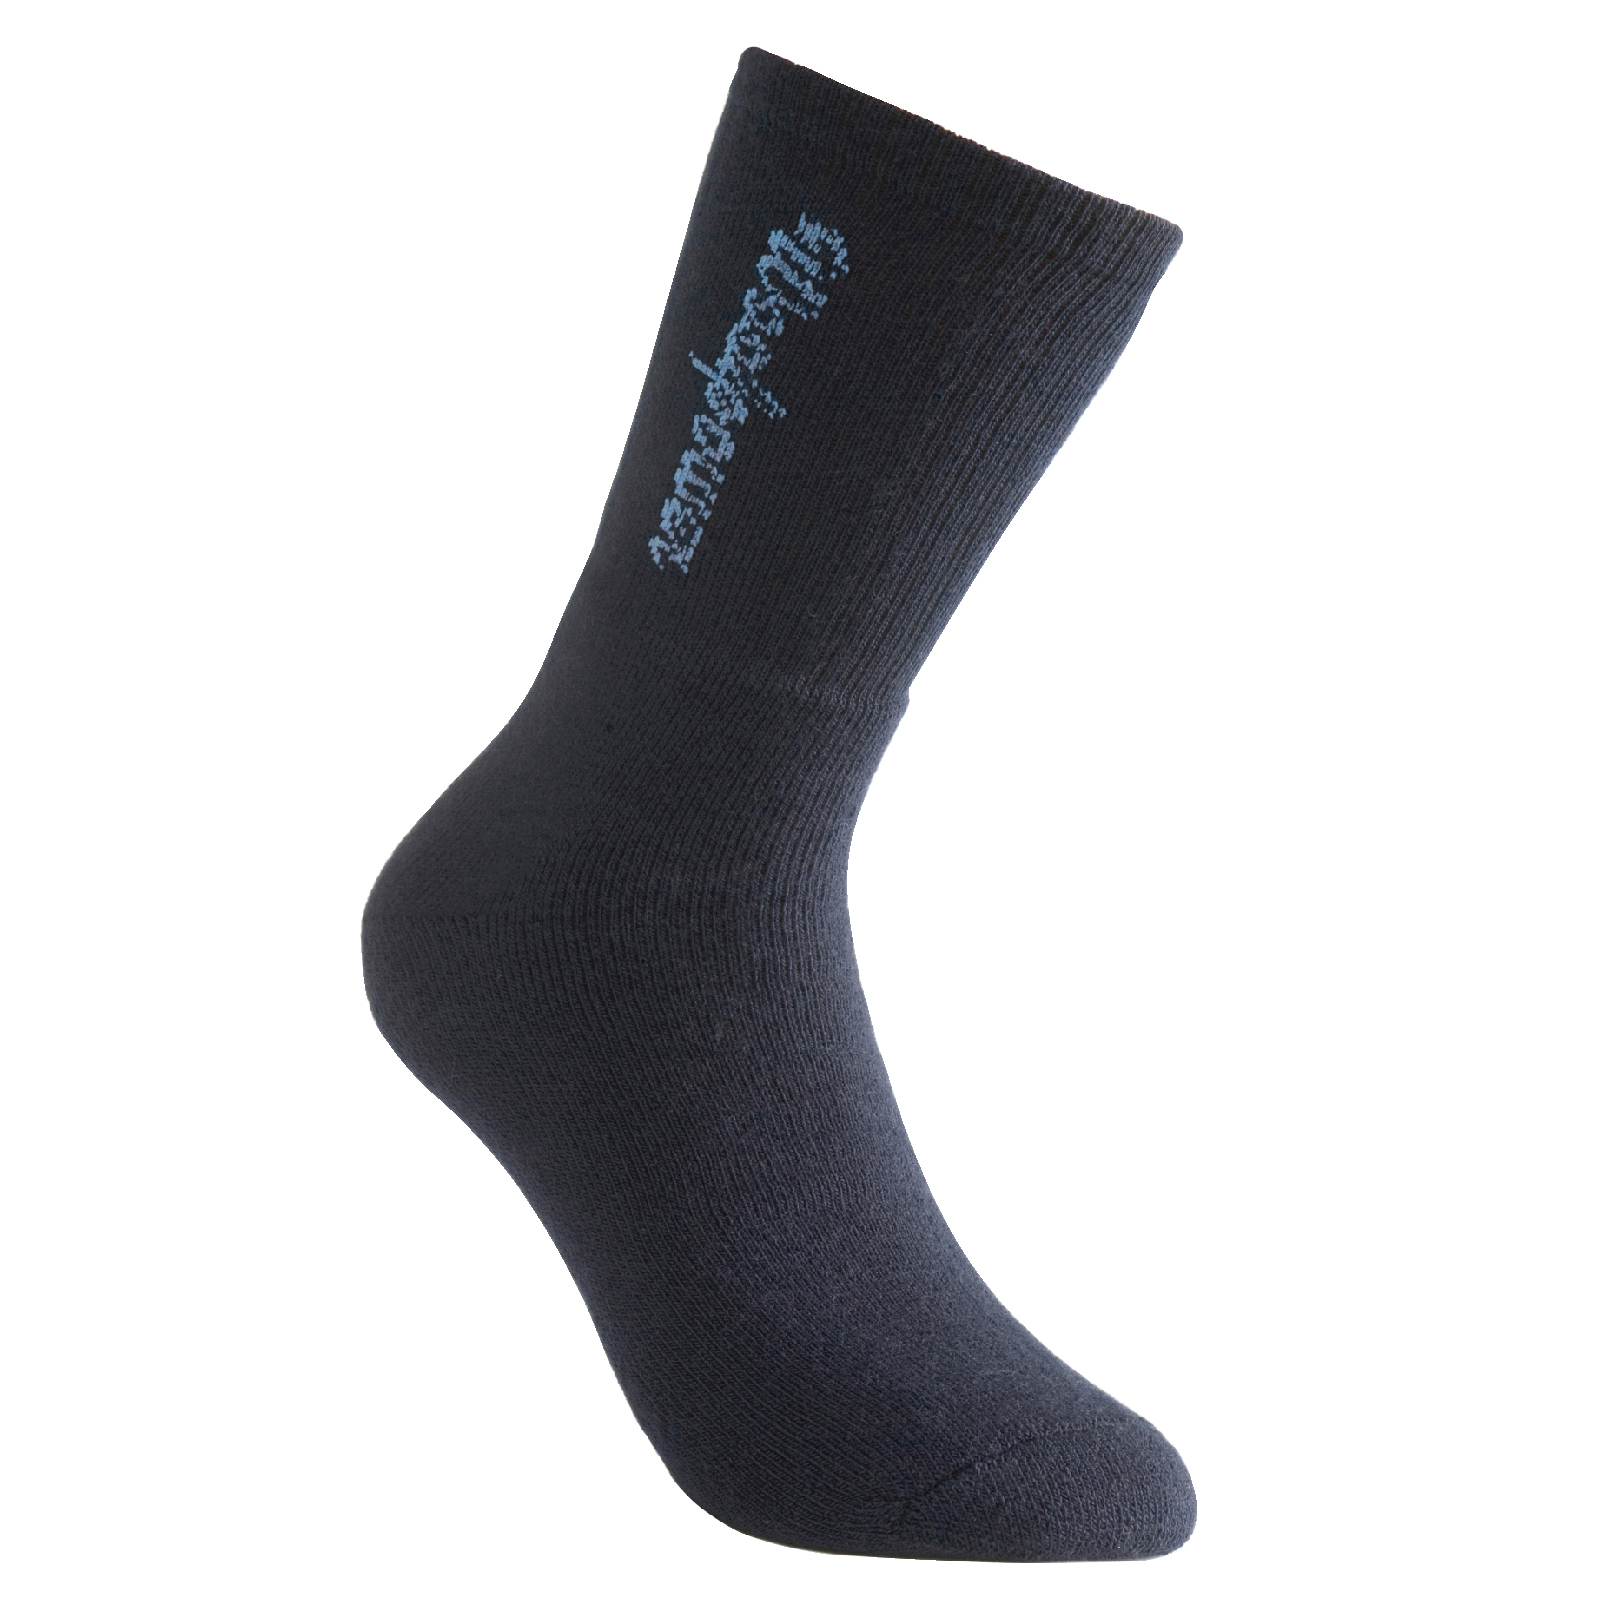 Woolpower Socken dunkelblau mit Logo | 400 g/m²